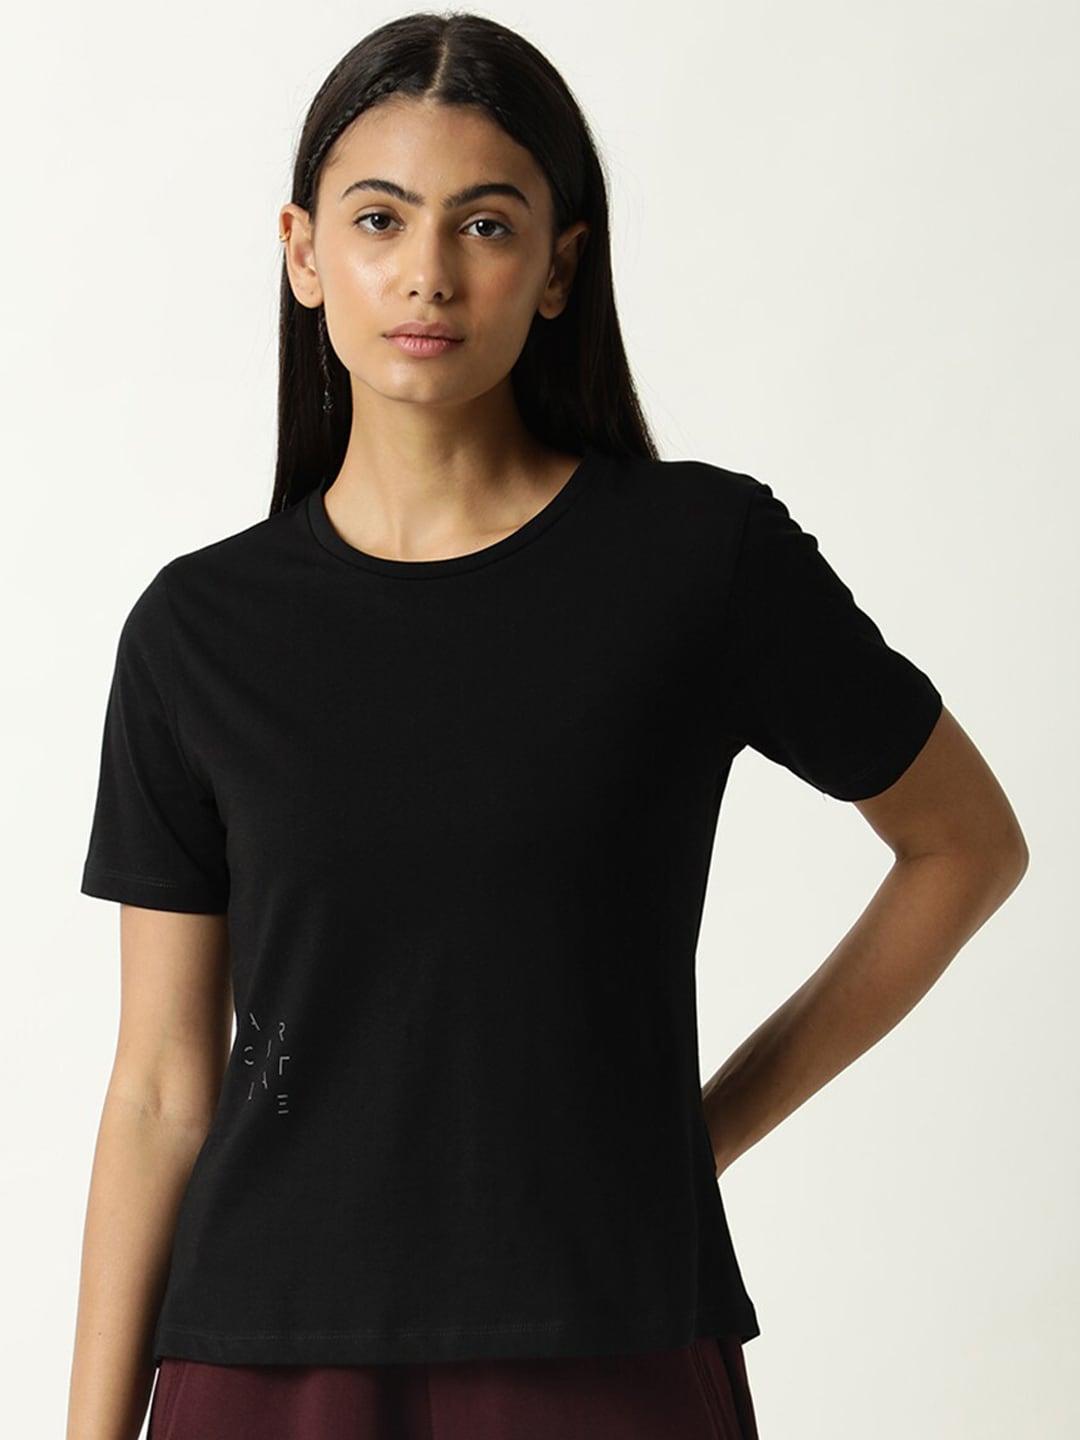 articale women black solid slim fit cotton t-shirt